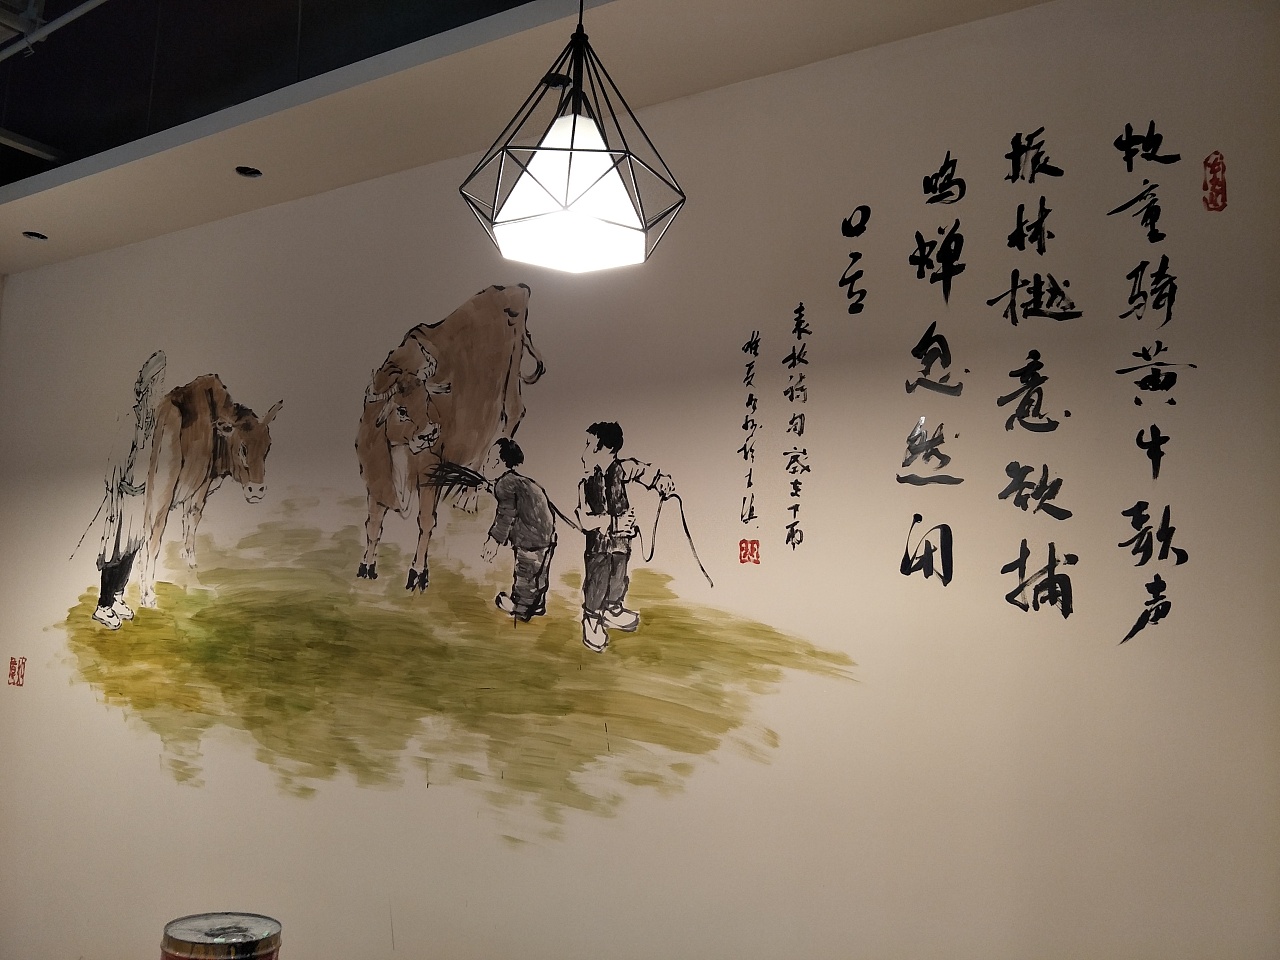 以牛为主题的墙绘  是一家牛肉火锅店